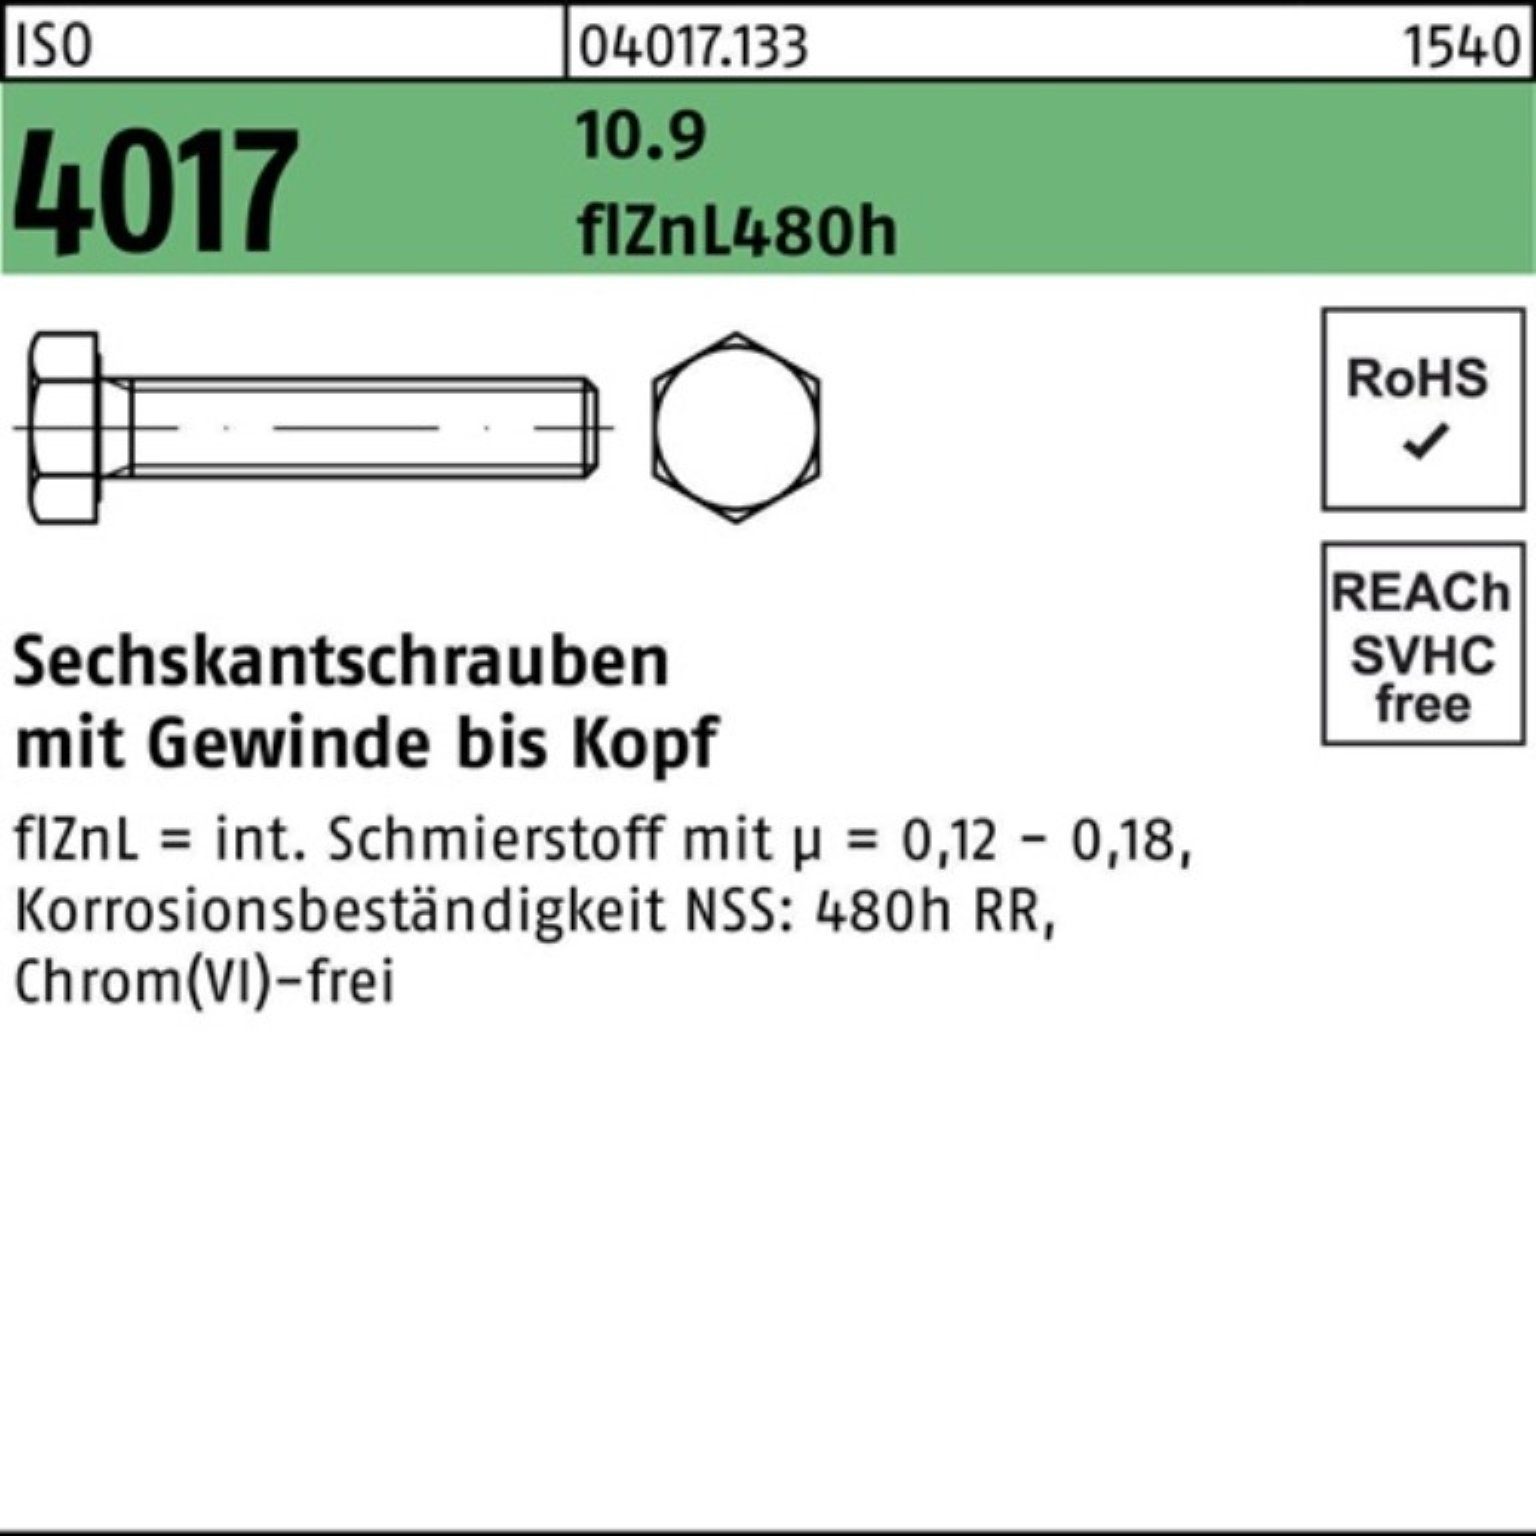 Bufab Sechskantschraube Pack 100er 55 M10x 4017 VG 1 10.9 Sechskantschraube ISO zinklamellenb